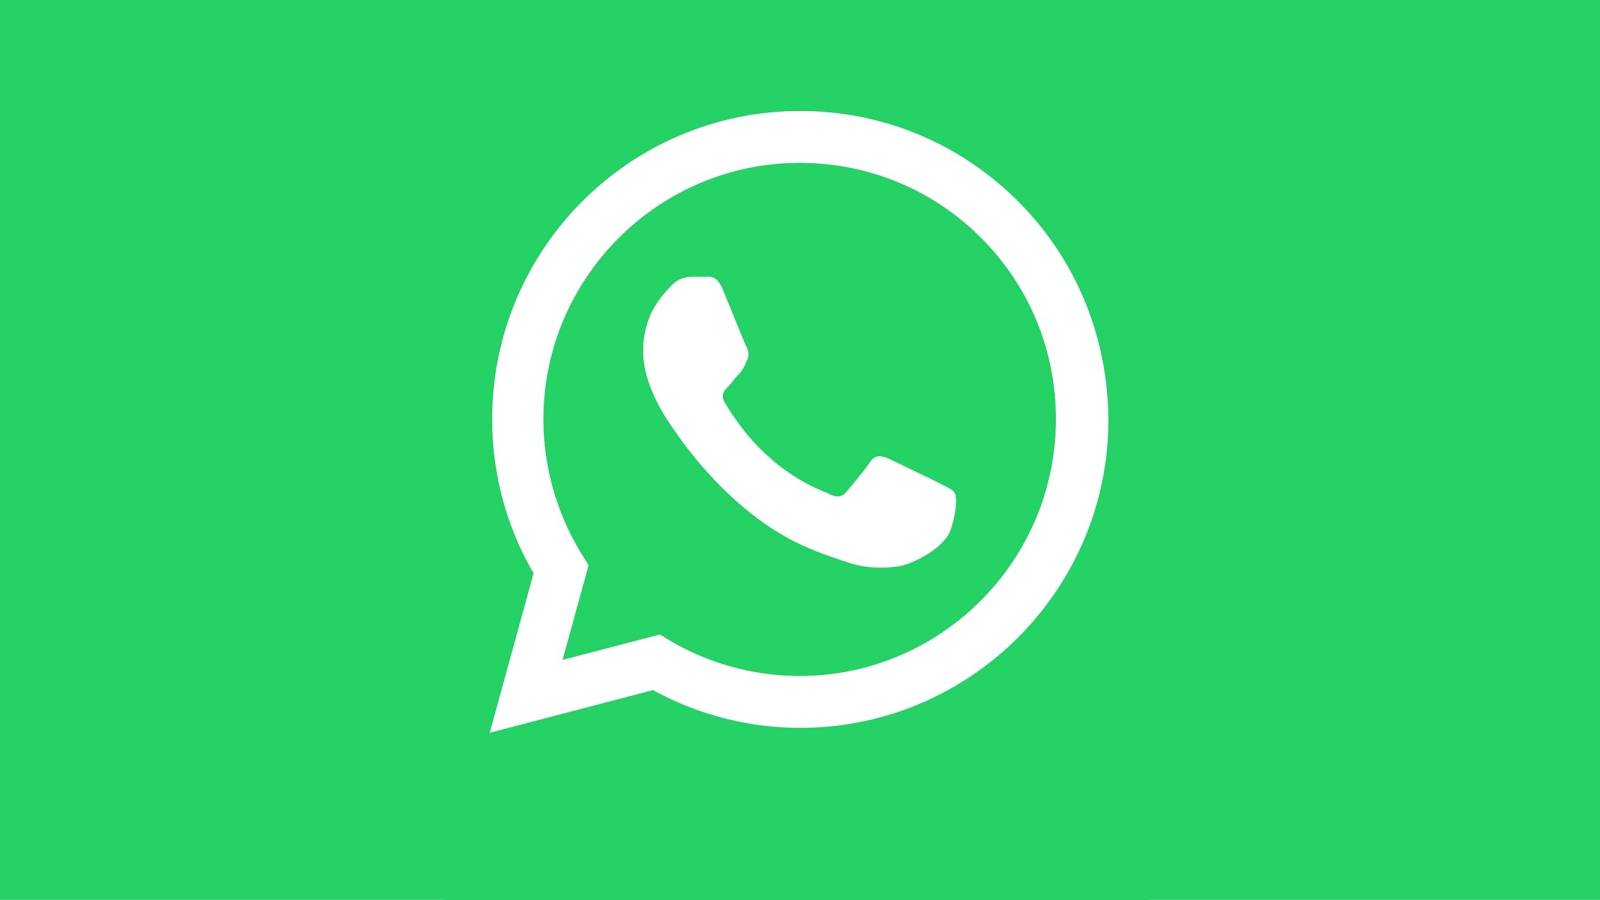 WhatsApp verrast veranderingen Belangrijke update iPhone Android